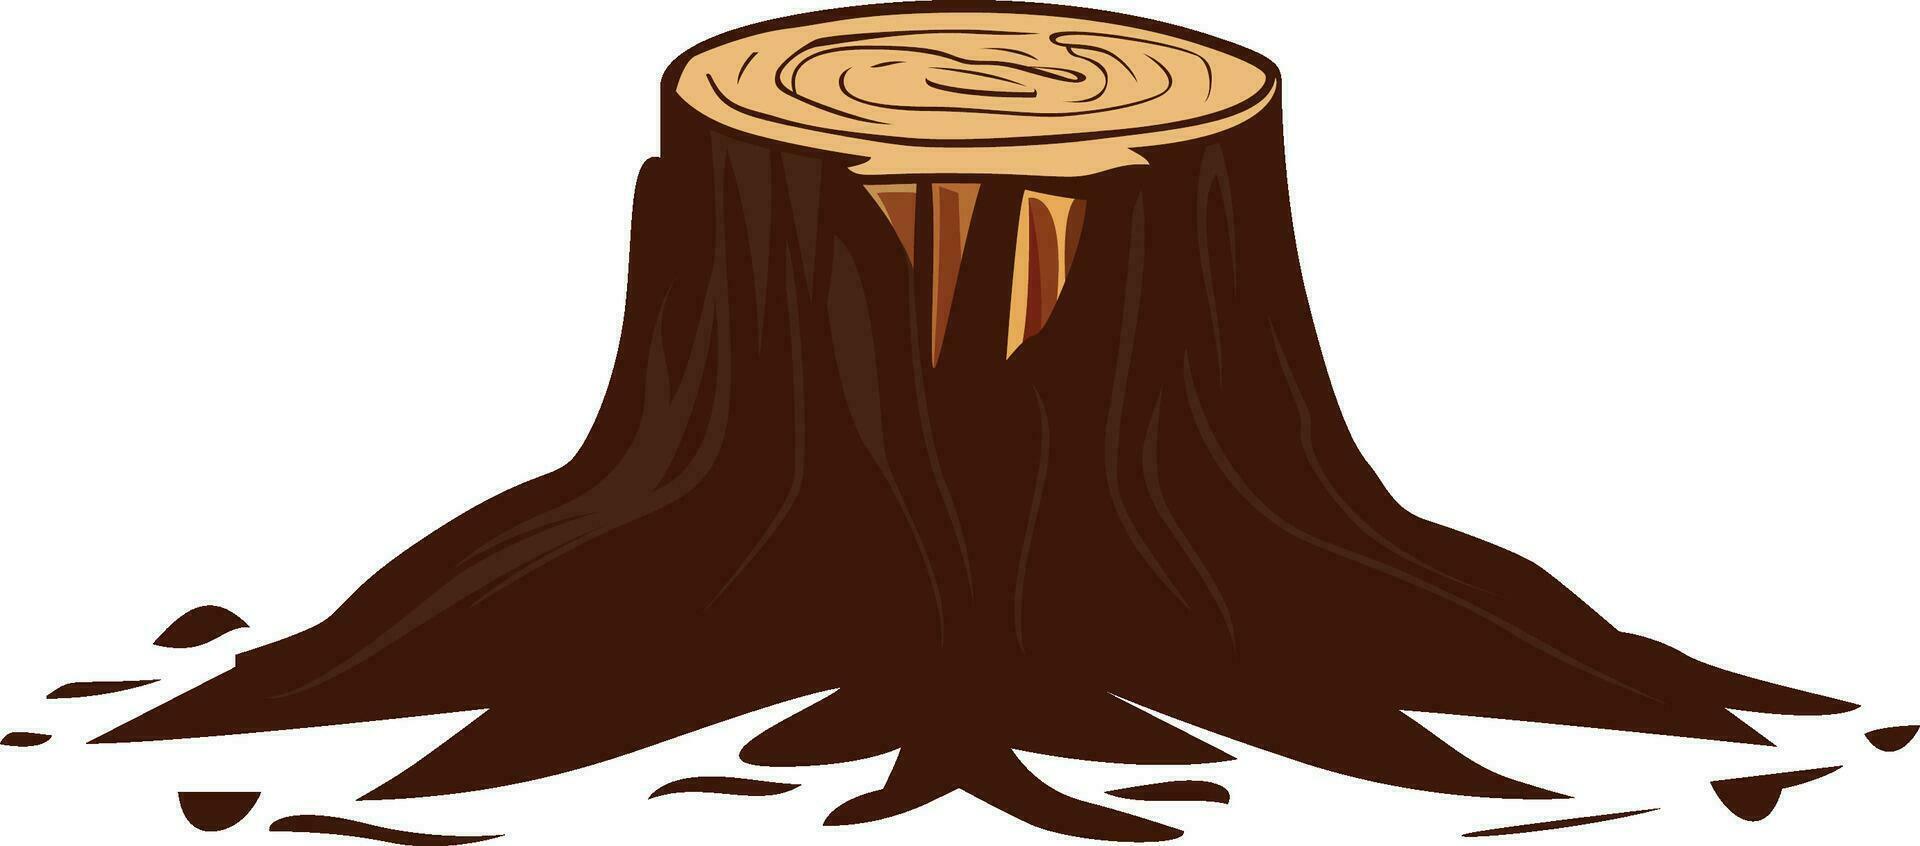 arbre souche vecteur illustration , le base de une arbre après le du repos de le tronc a été Couper vers le bas vecteur image